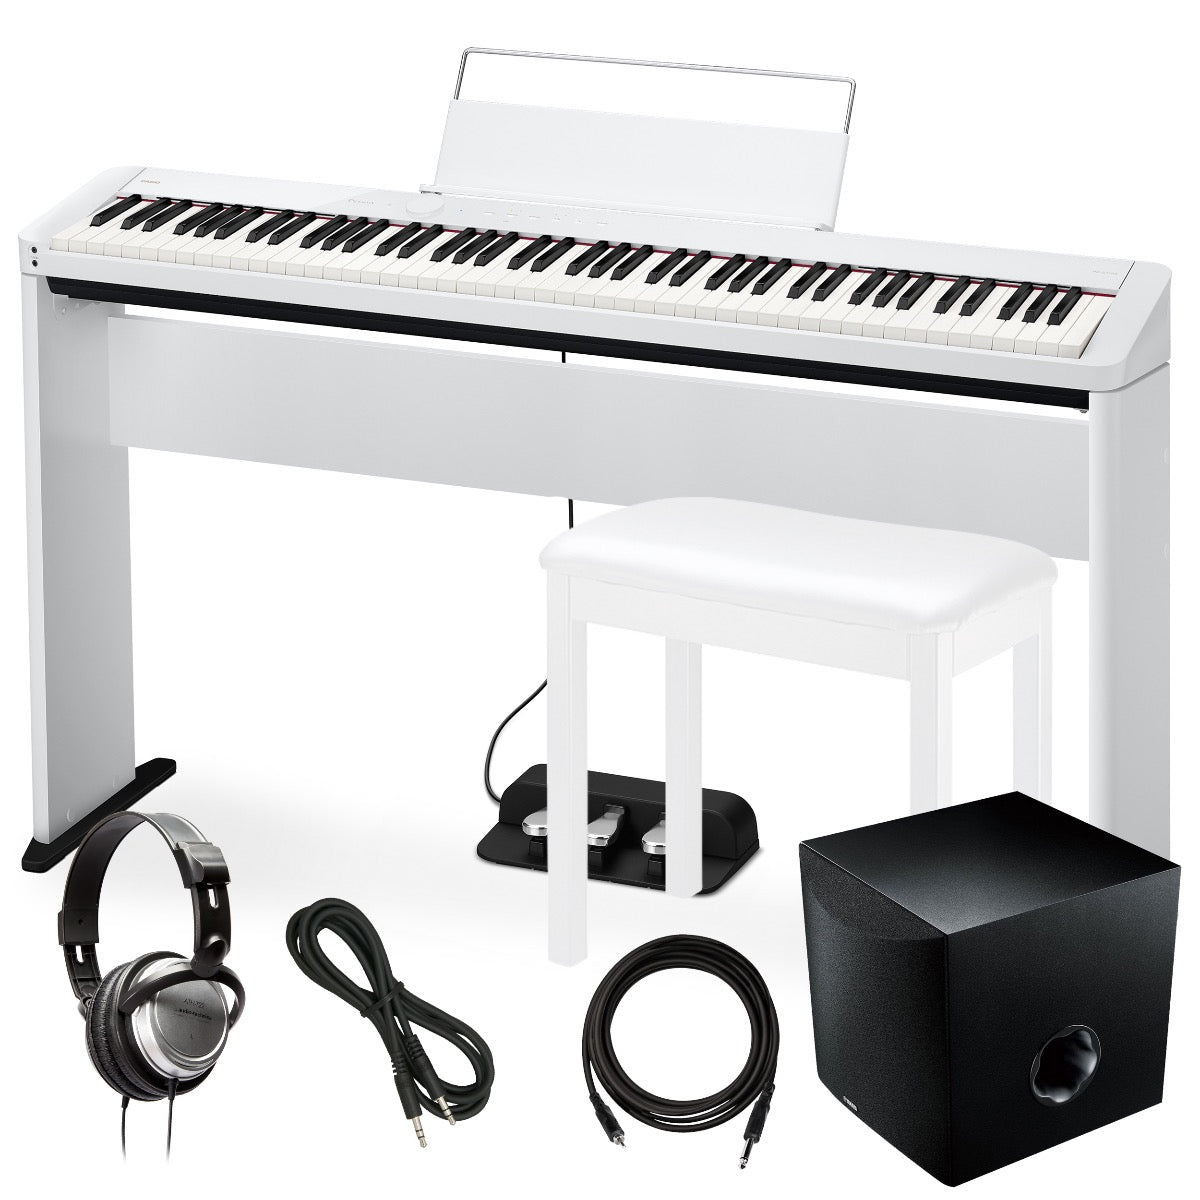 Casio Privia PX-S1100 Digital Piano - White COMPLETE HOME BUNDLE PLUS